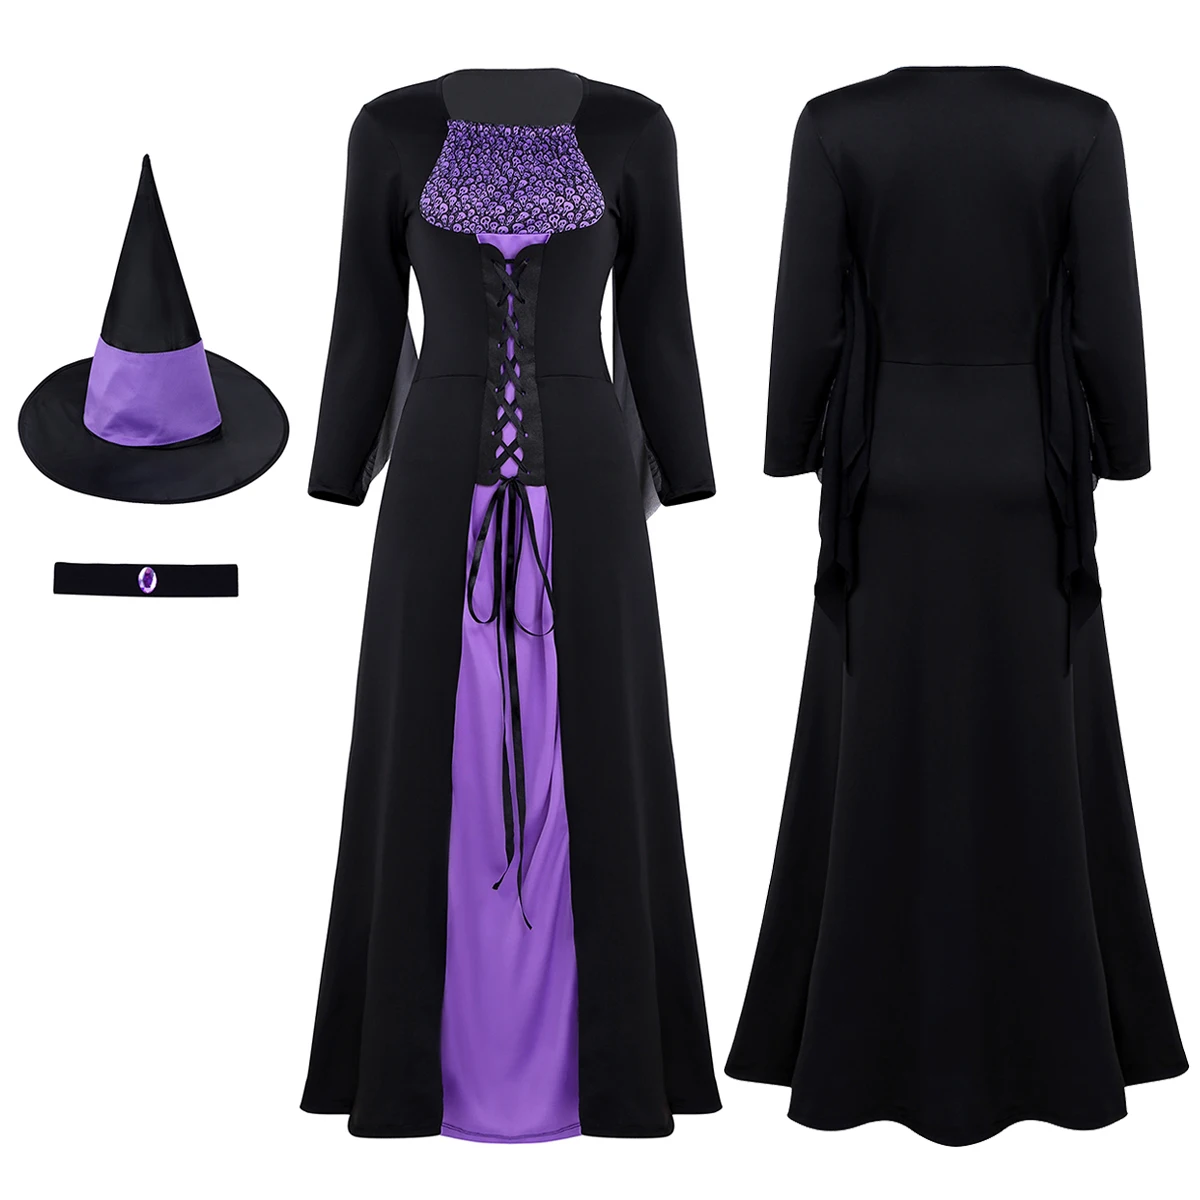 Iiniim злая ведьма косплей маскарадный костюм вечеринка Призрак Скелет Печатных спереди на шнуровке платье с острым шляпа и ожерелье